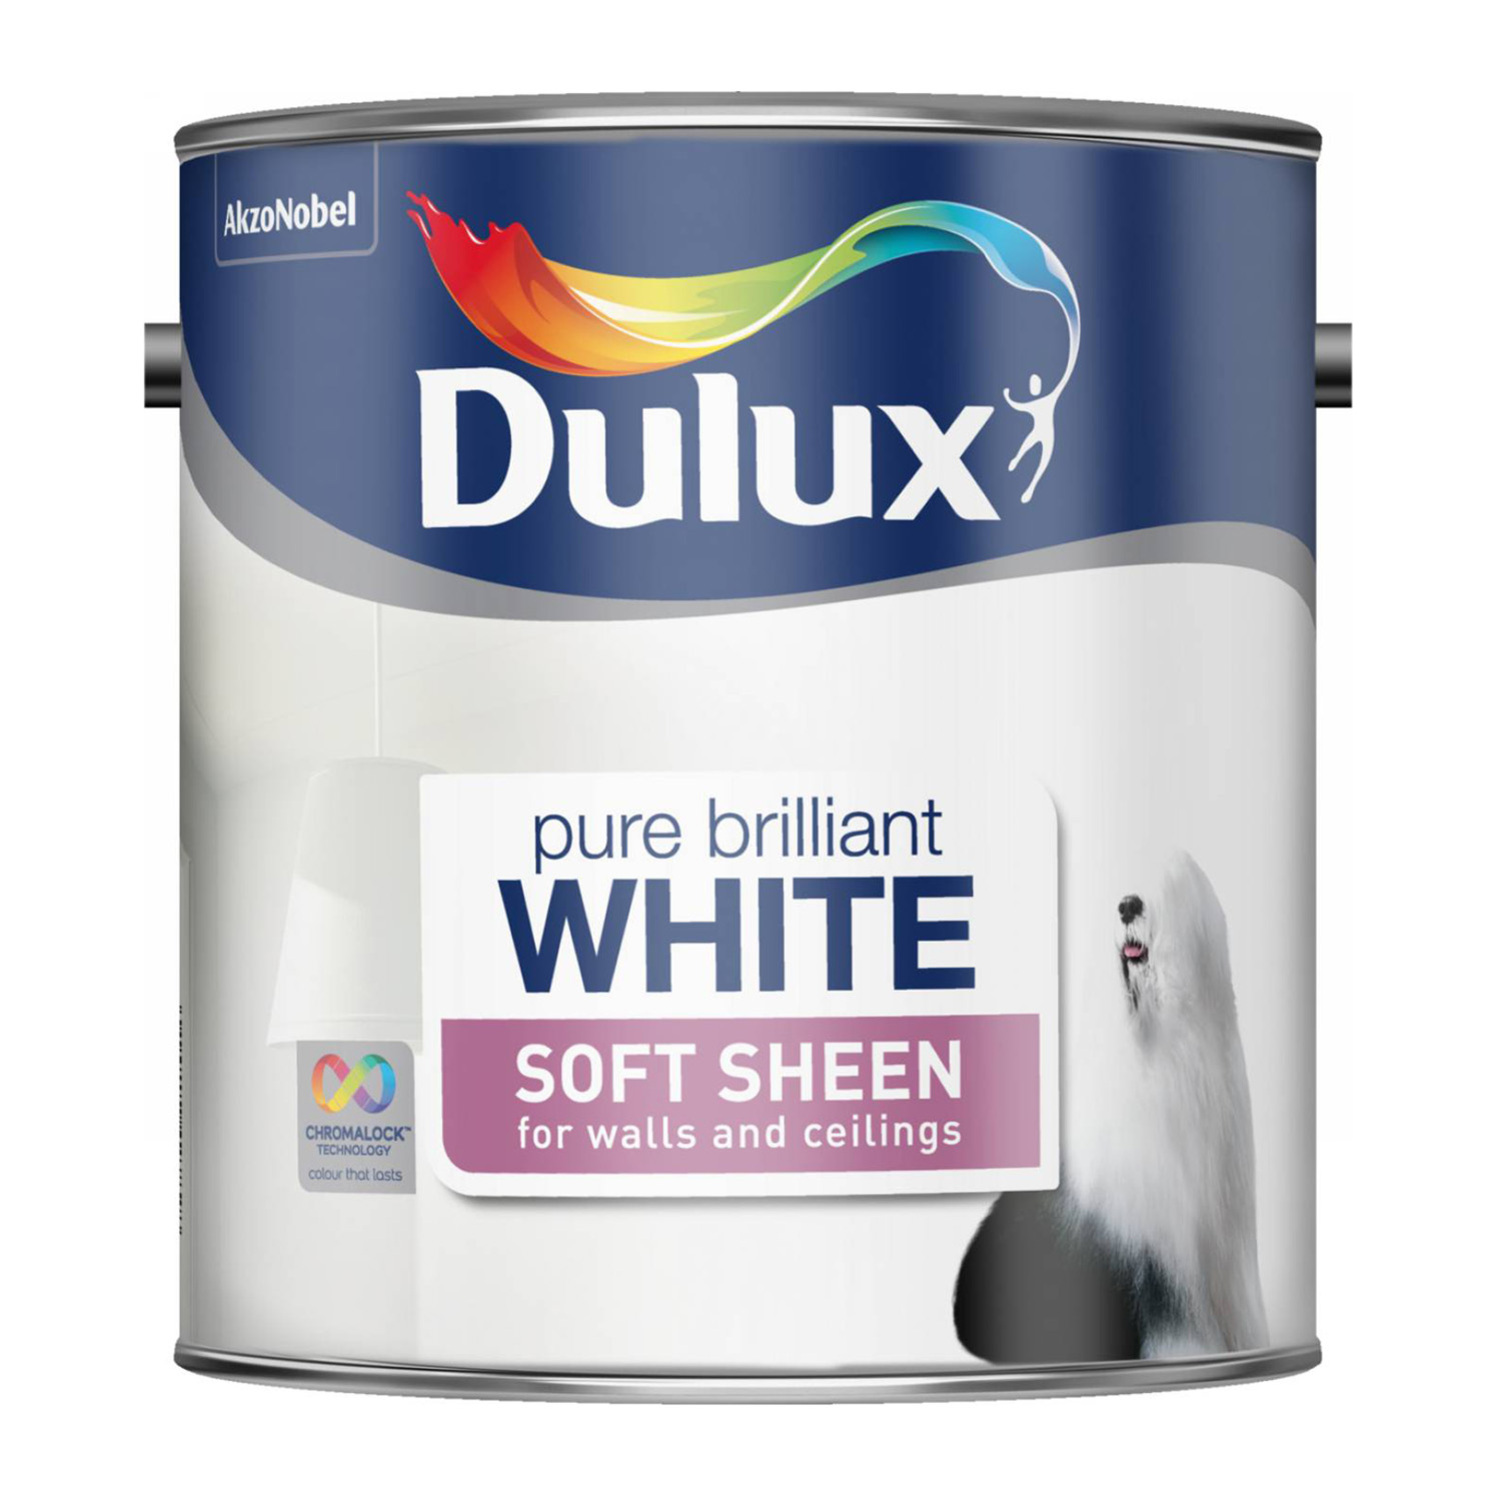 Dulux Walls & Ceilings Pure Brilliant White Soft Sheen Paint 2.5L Image 2